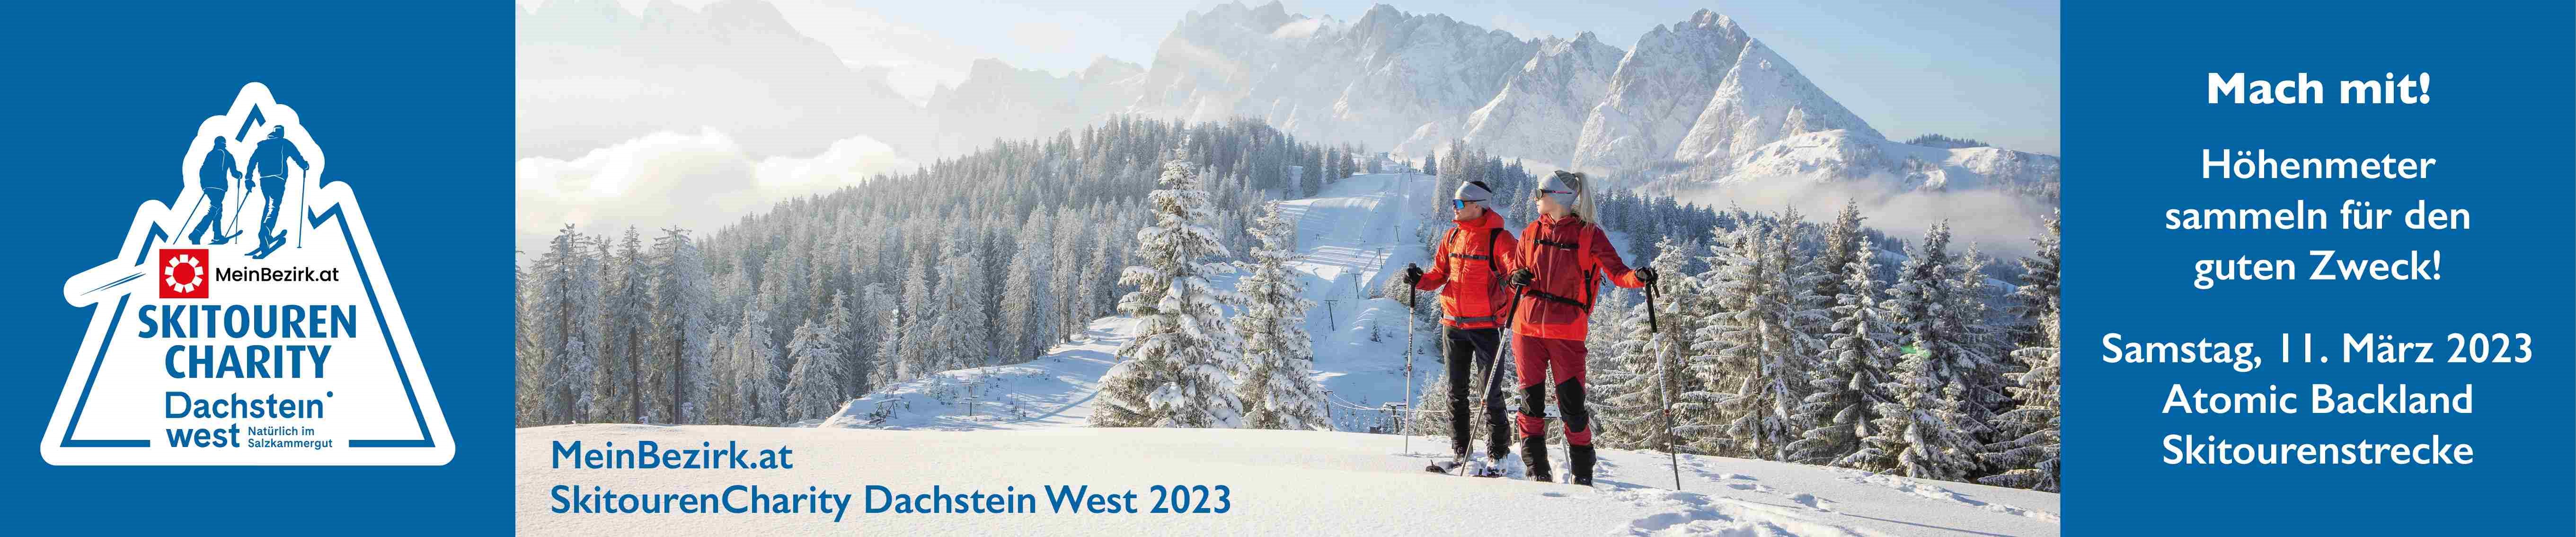 Skitouren Charity 2023